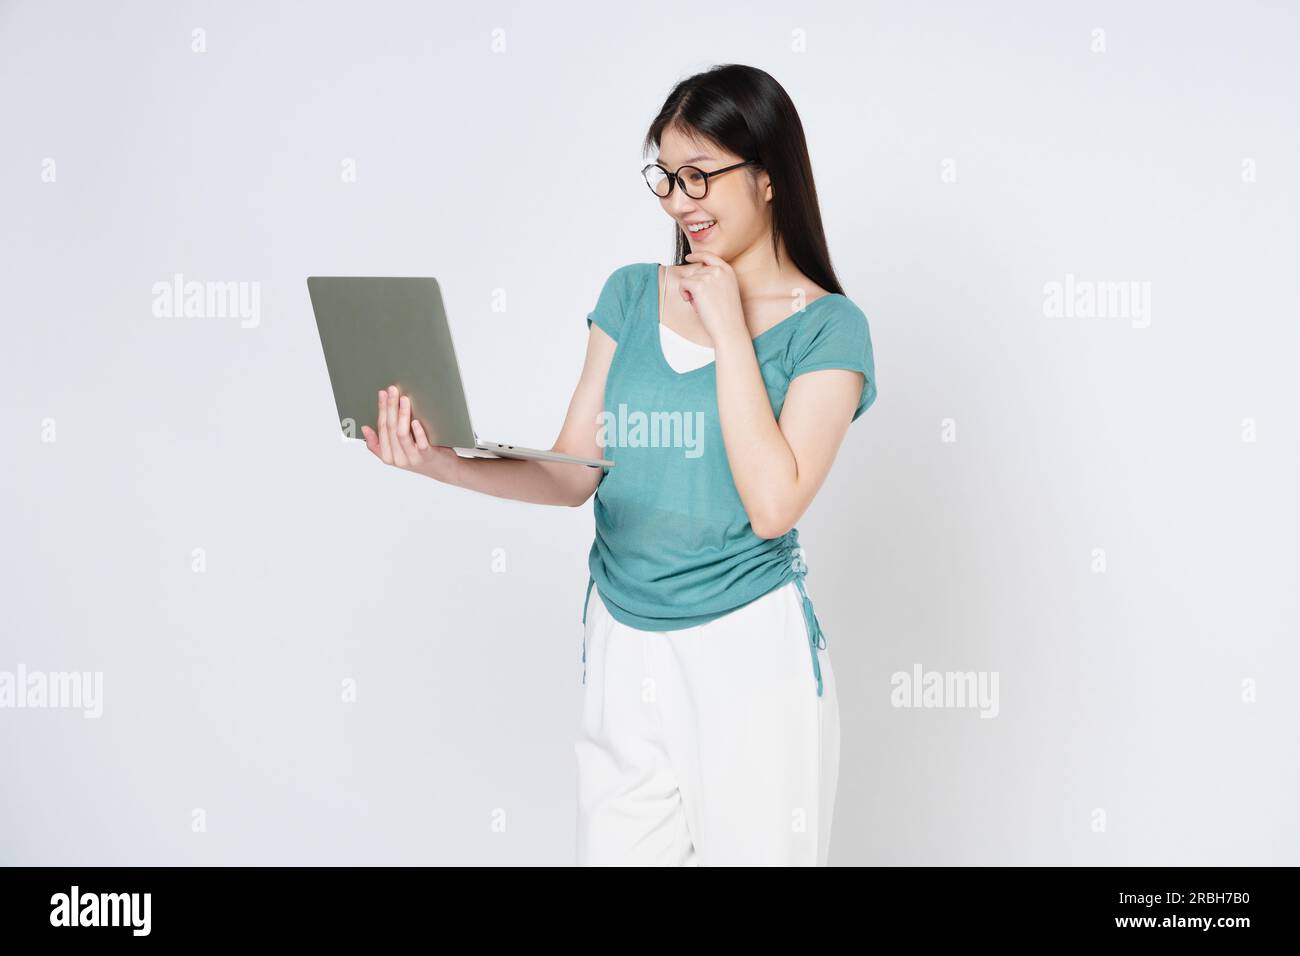 Giovane donna che tiene in mano un notebook mentre è isolata su sfondo bianco. Foto Stock